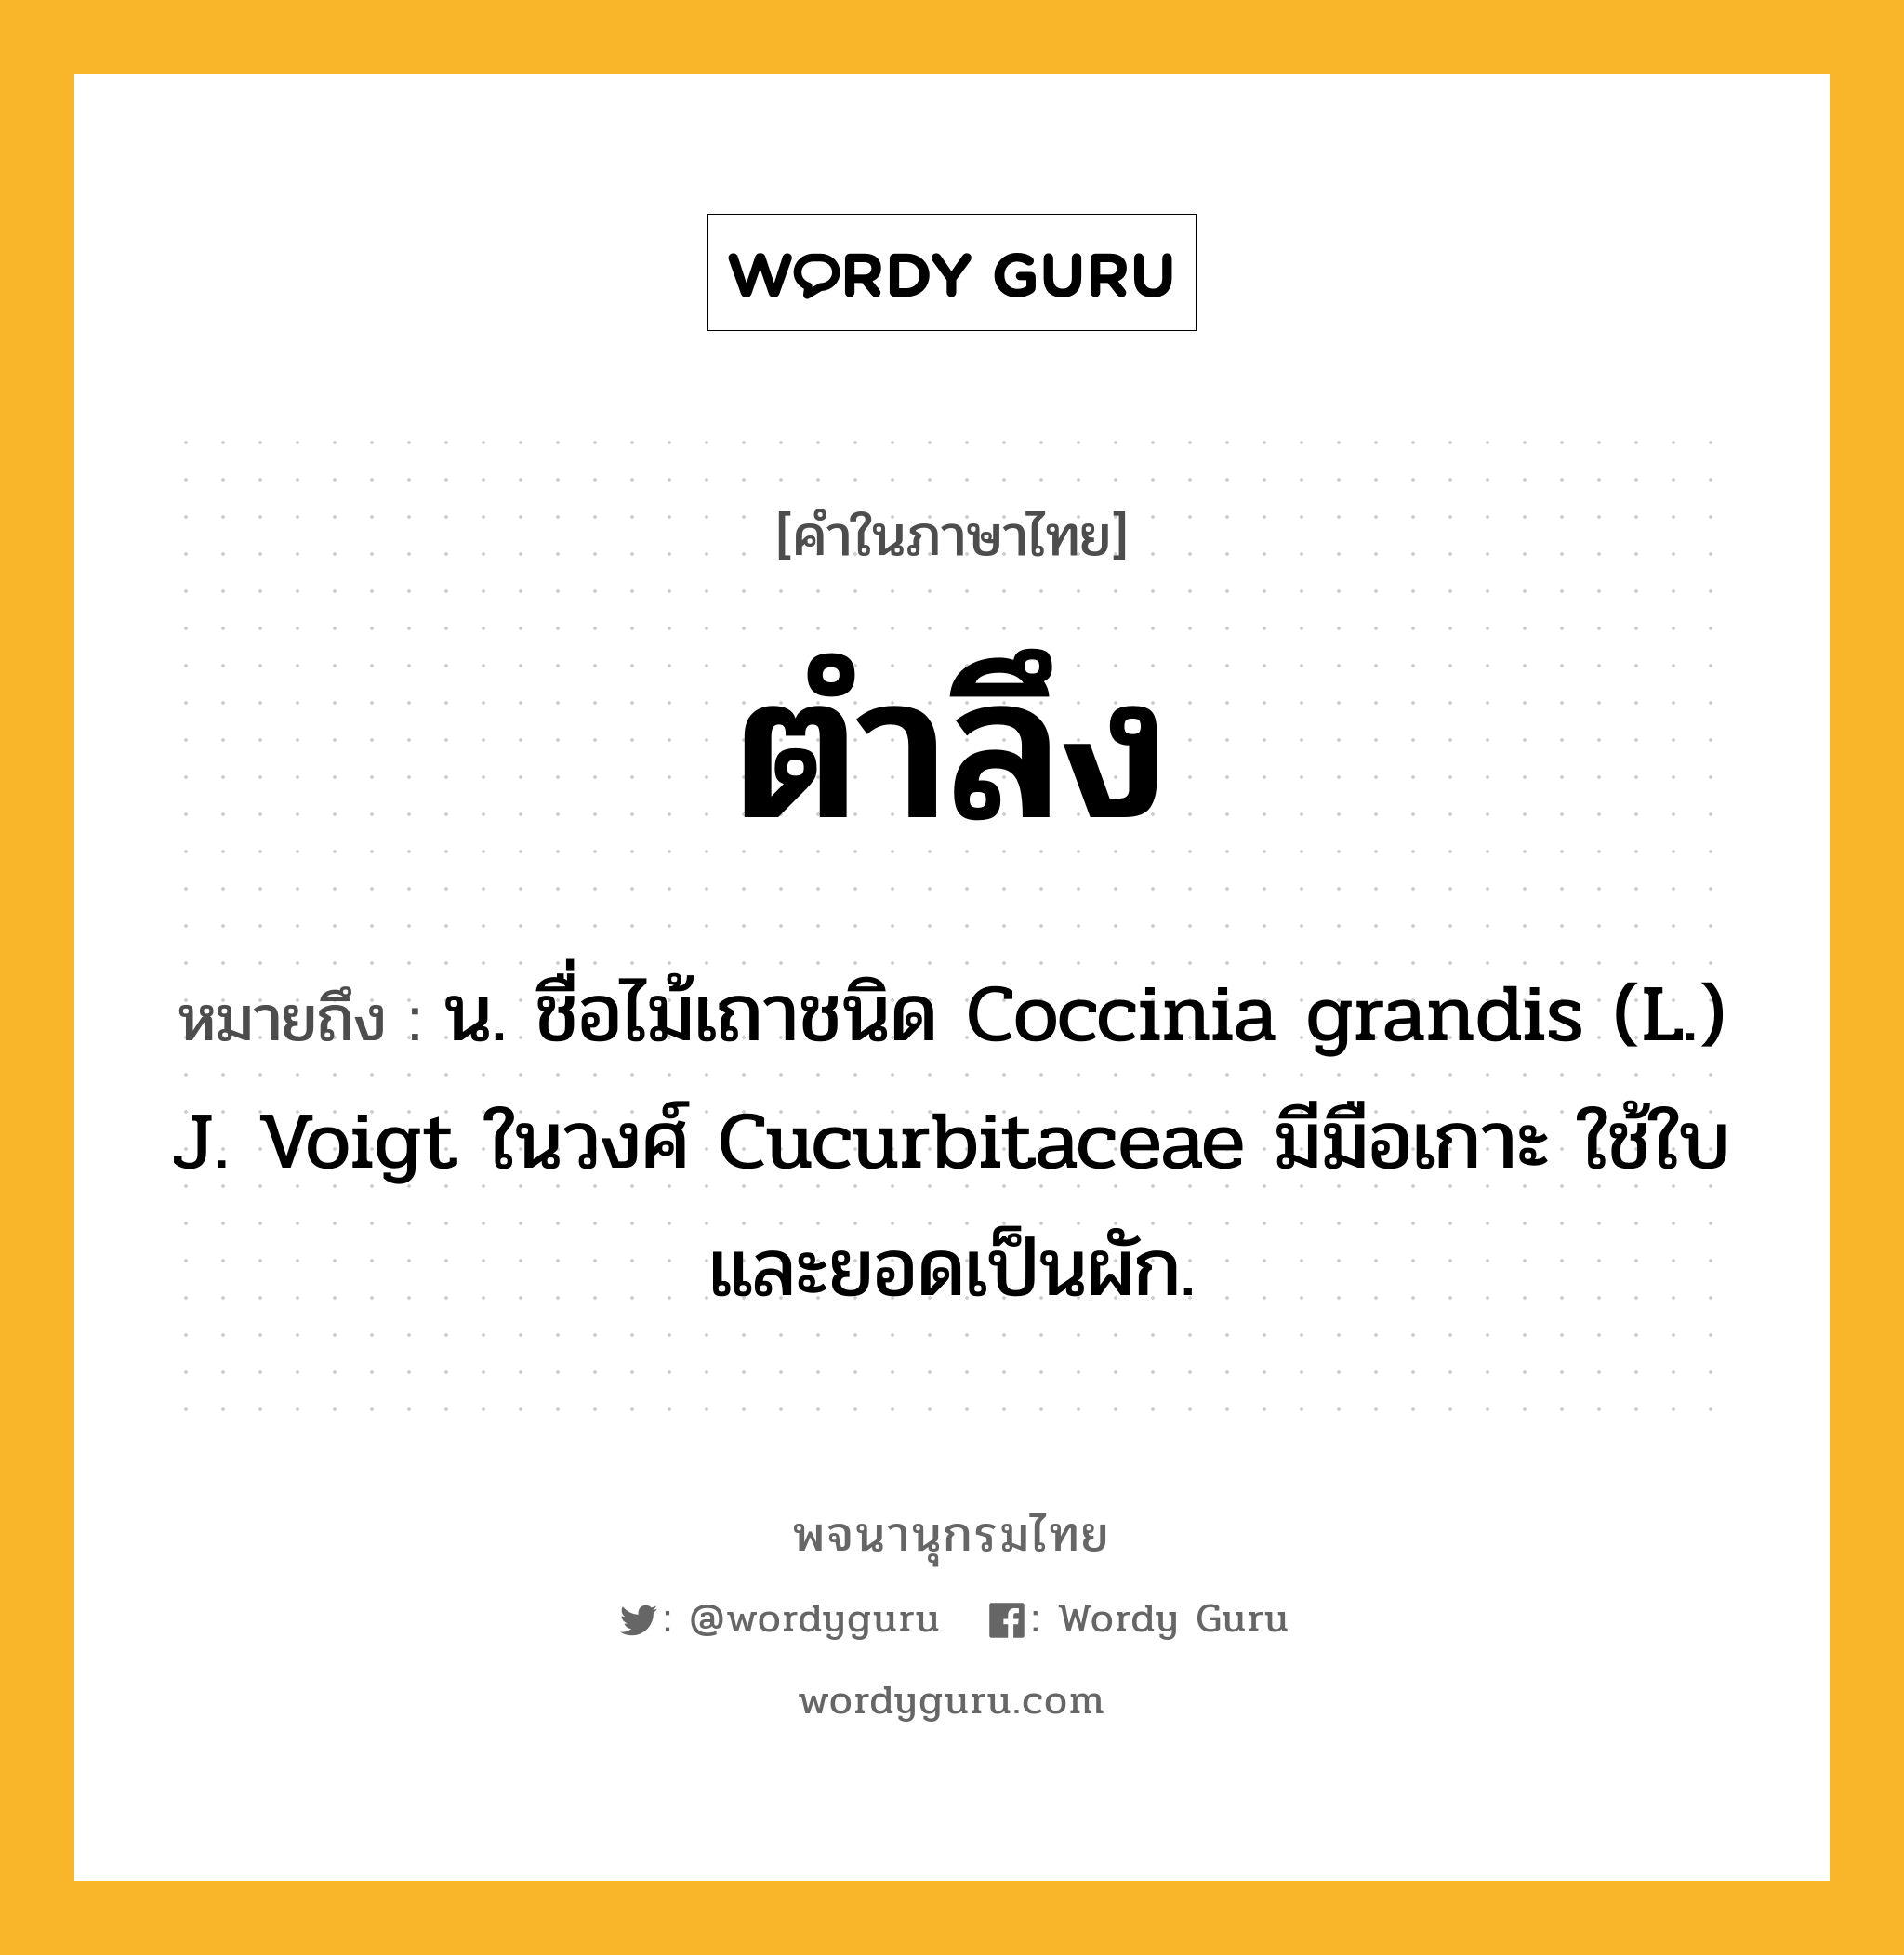 ตำลึง หมายถึงอะไร?, คำในภาษาไทย ตำลึง หมายถึง น. ชื่อไม้เถาชนิด Coccinia grandis (L.) J. Voigt ในวงศ์ Cucurbitaceae มีมือเกาะ ใช้ใบและยอดเป็นผัก.